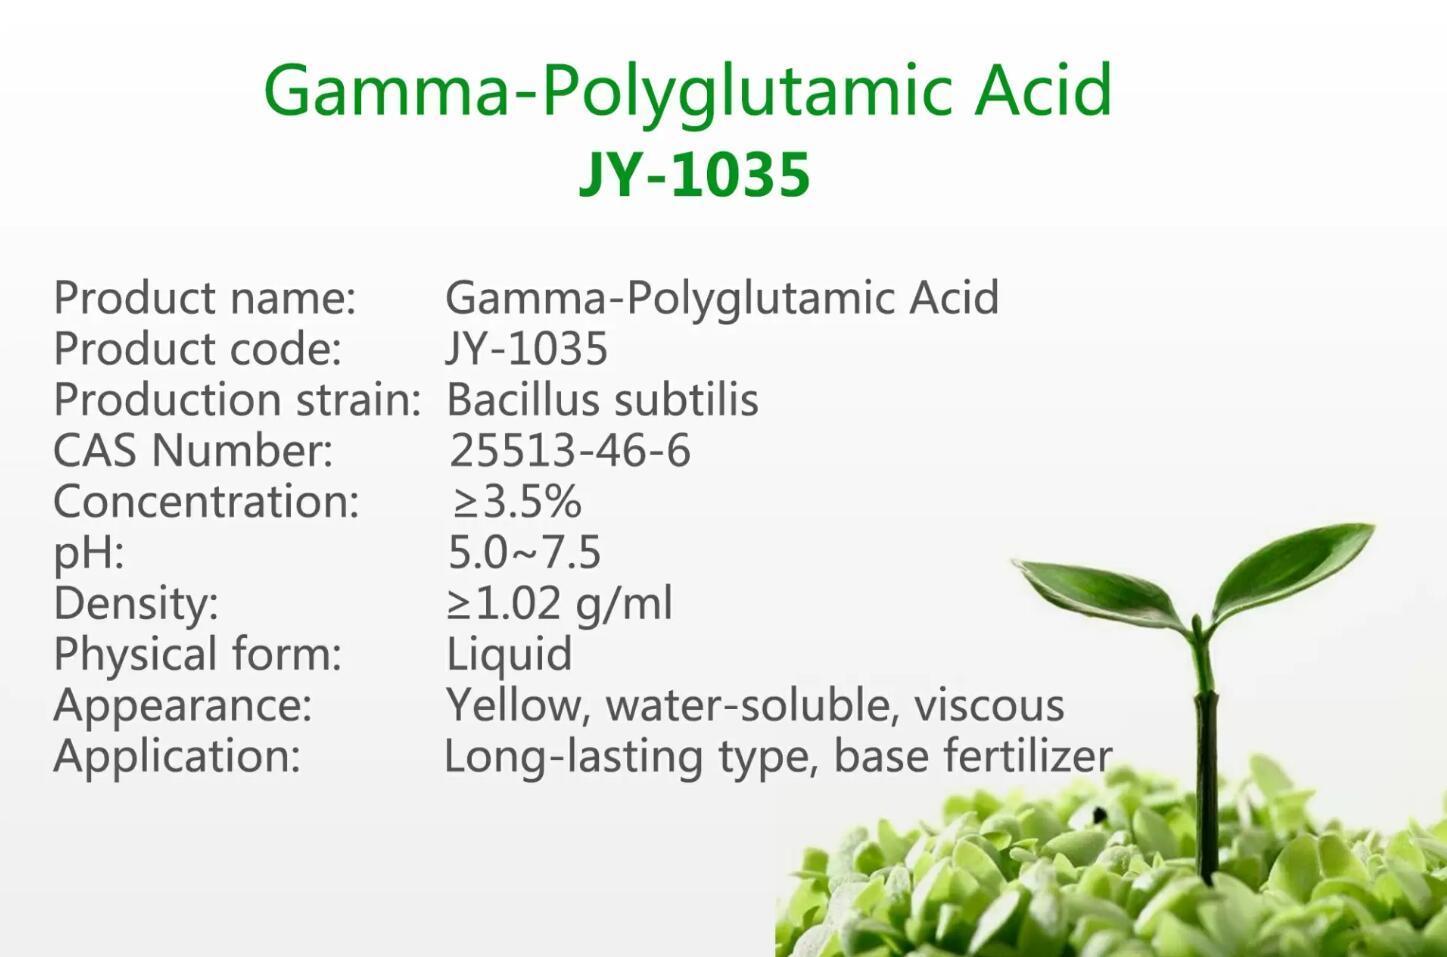 γ-Polyglutamic Acid JY-1035 Manufacturers china